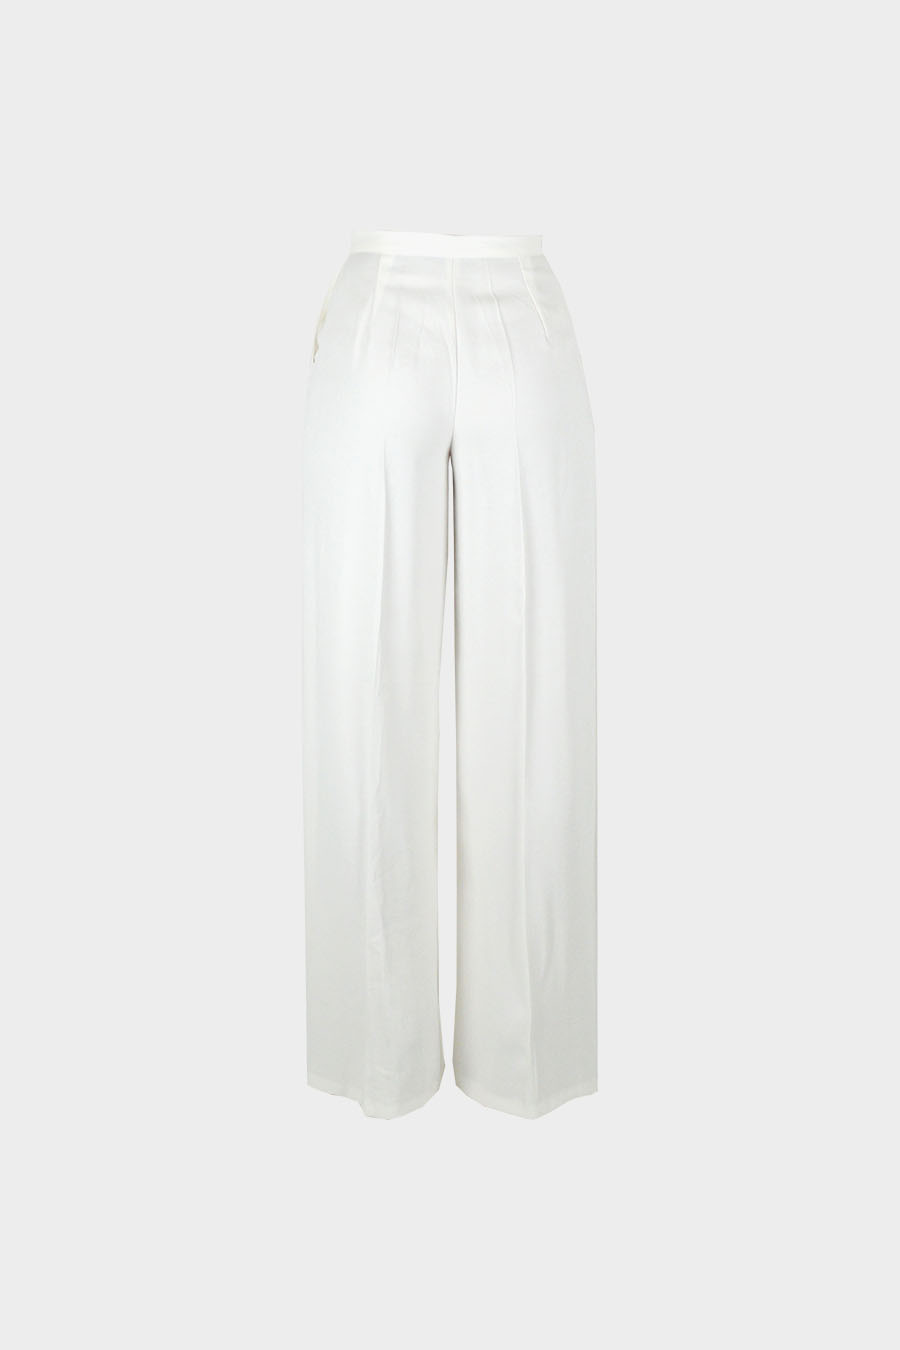 pantalon blanc